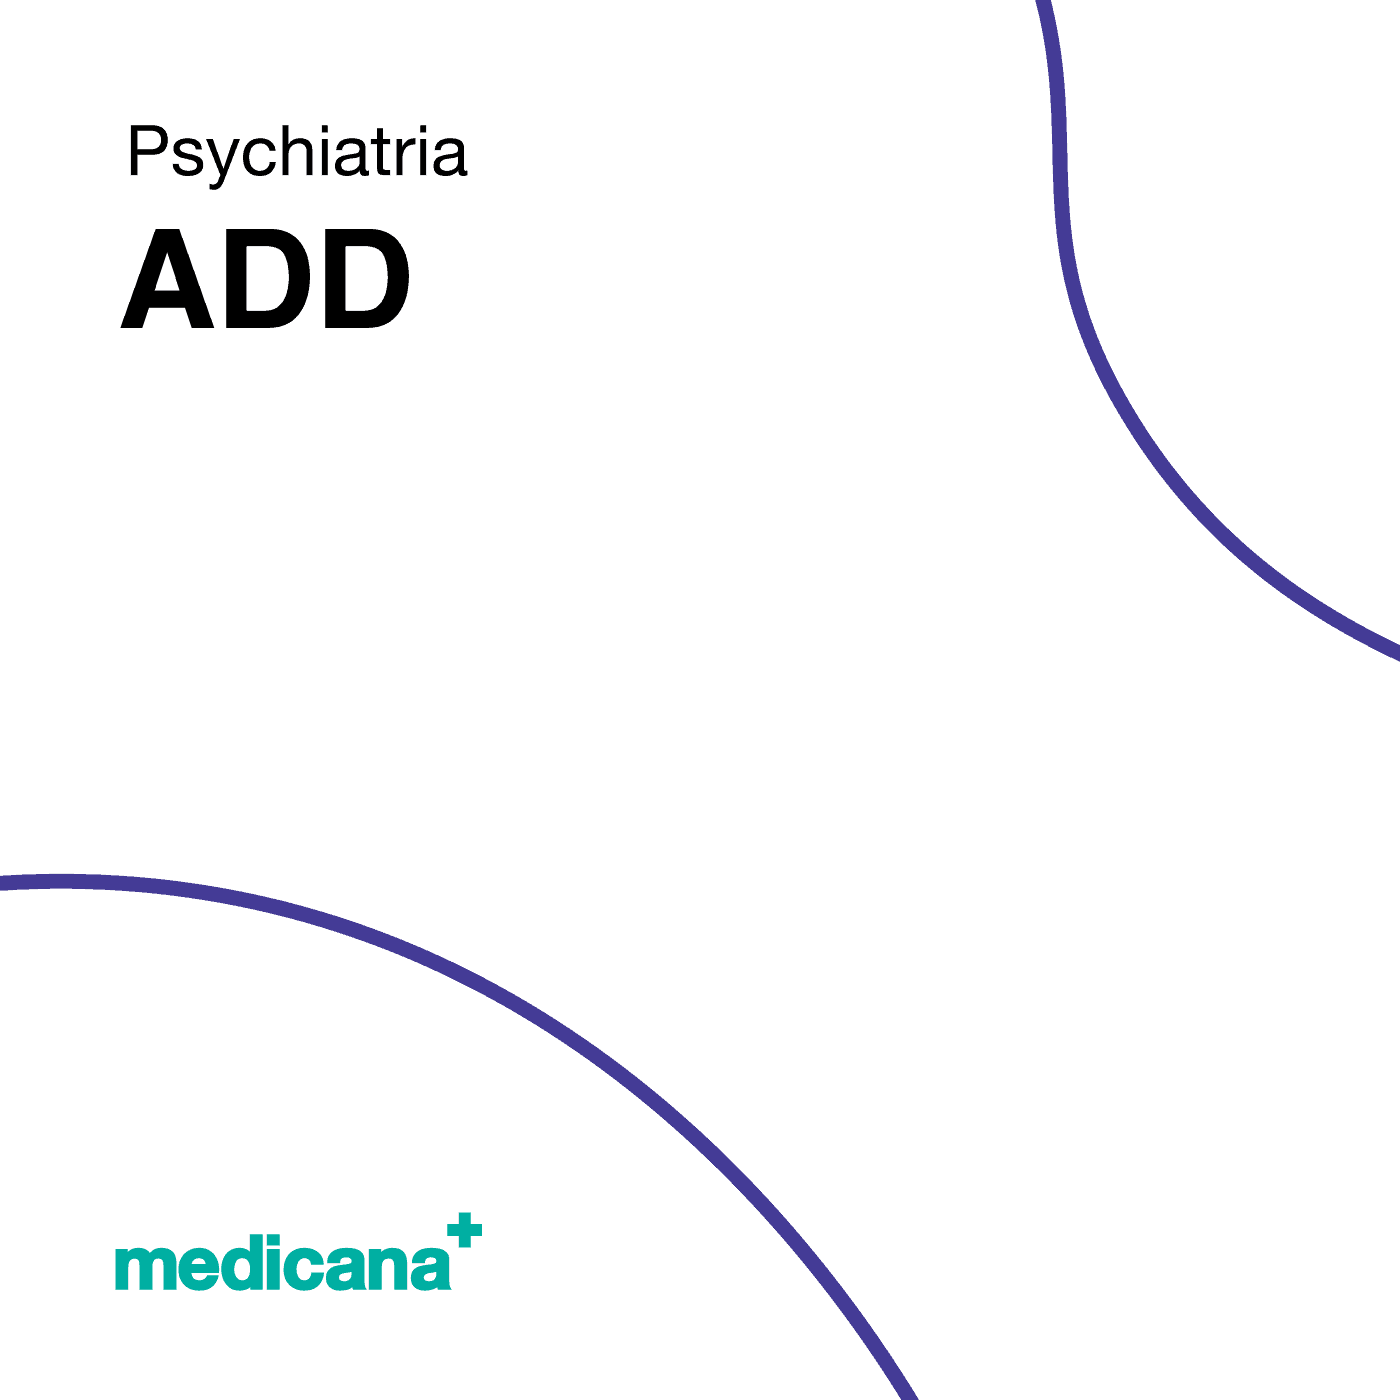 Grafika, białe tło z granatową kreską, czarnym napisem Psychiatria - ADD i logo Medicana Centrum Terapii Medyczna Marihuana w lewym dolnym rogu.